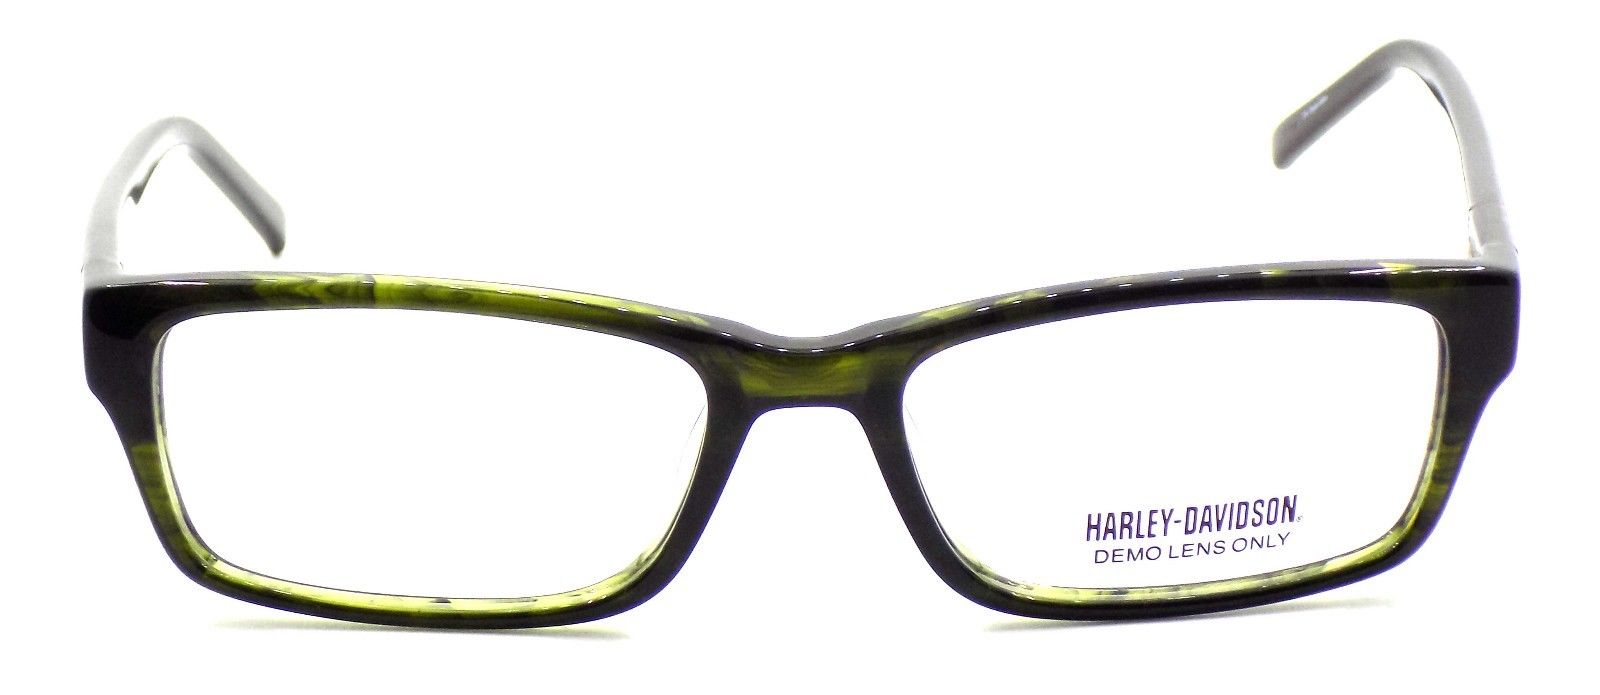 2-Harley Davidson HDT103 OL Women's Eyeglasses Frames 51-16-135 Olive + Case-715583731622-IKSpecs